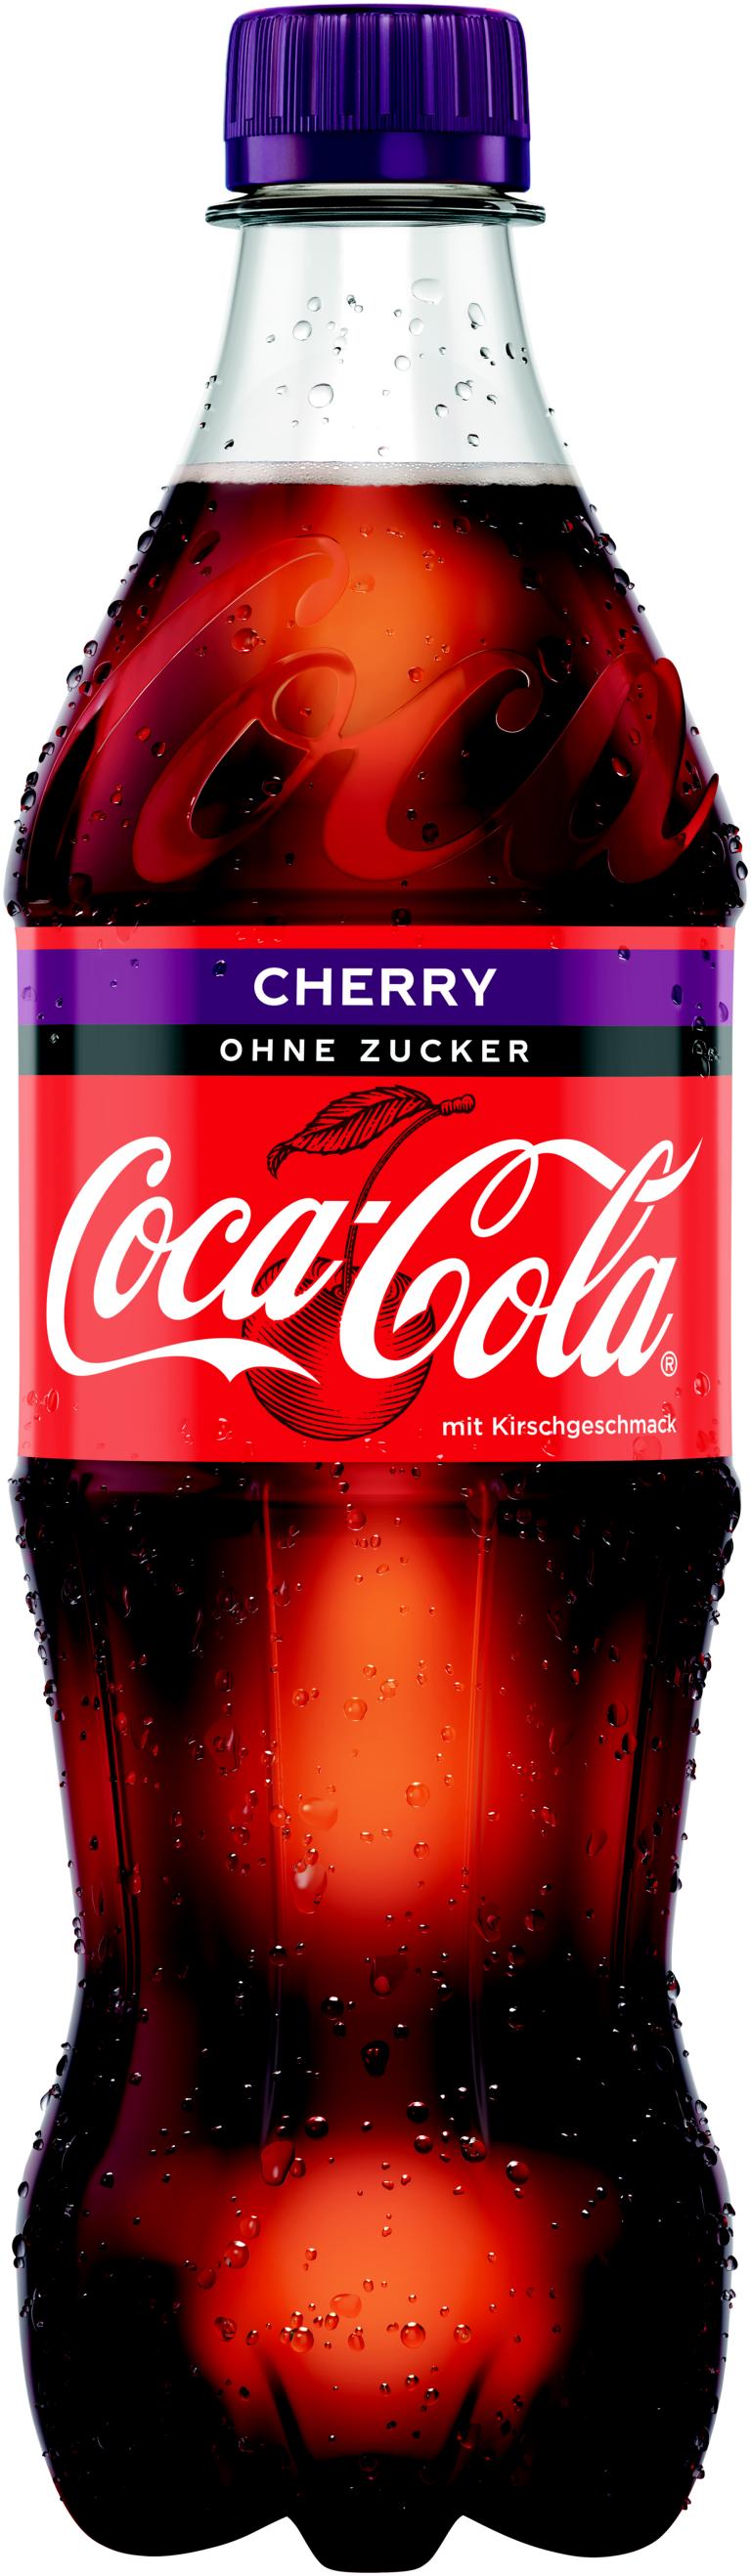 Coca Cola Cherry 12x0,5 l